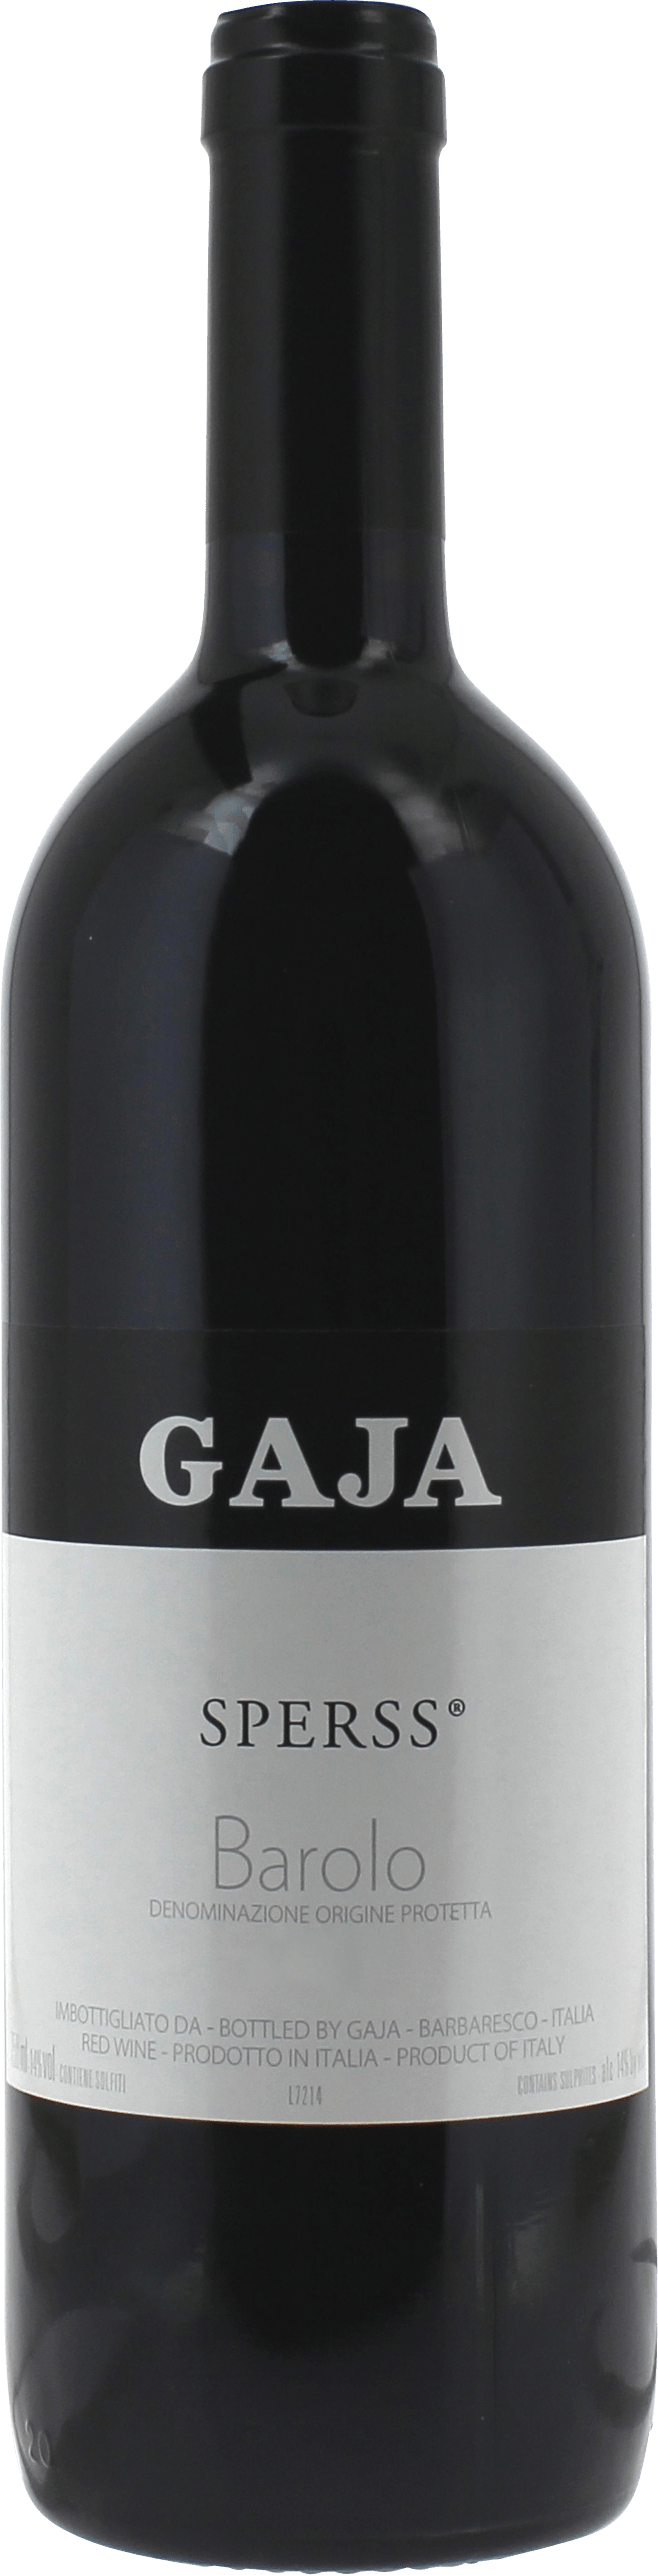 Gaja - sperss nebbiolo - barolo 2014  , Vin italien